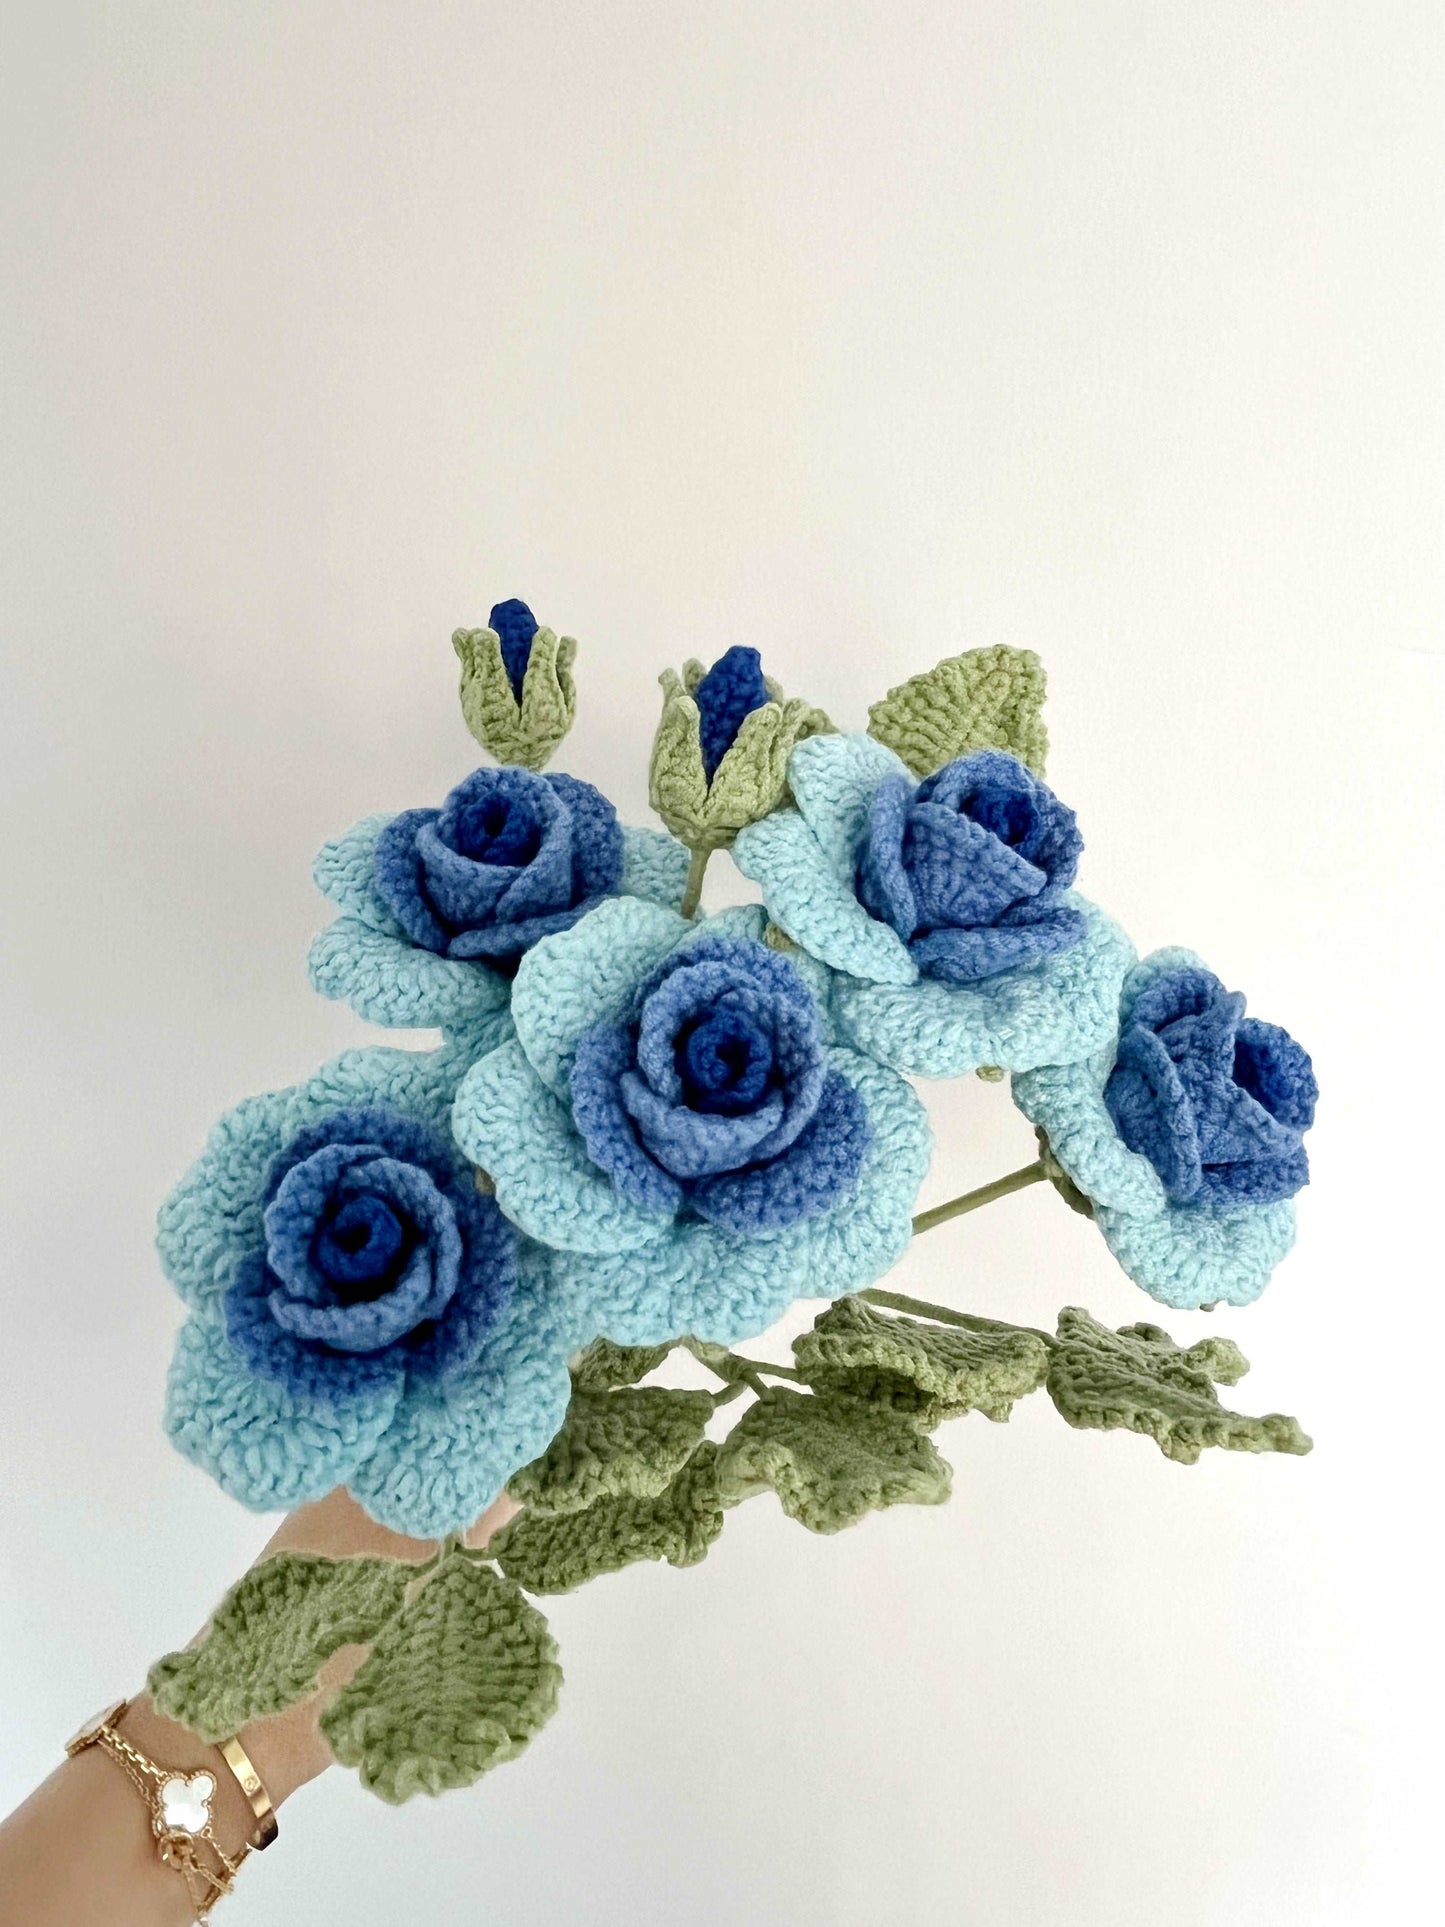 Exquisite Handcrafted Crochet Blue Floral Bouquet Design